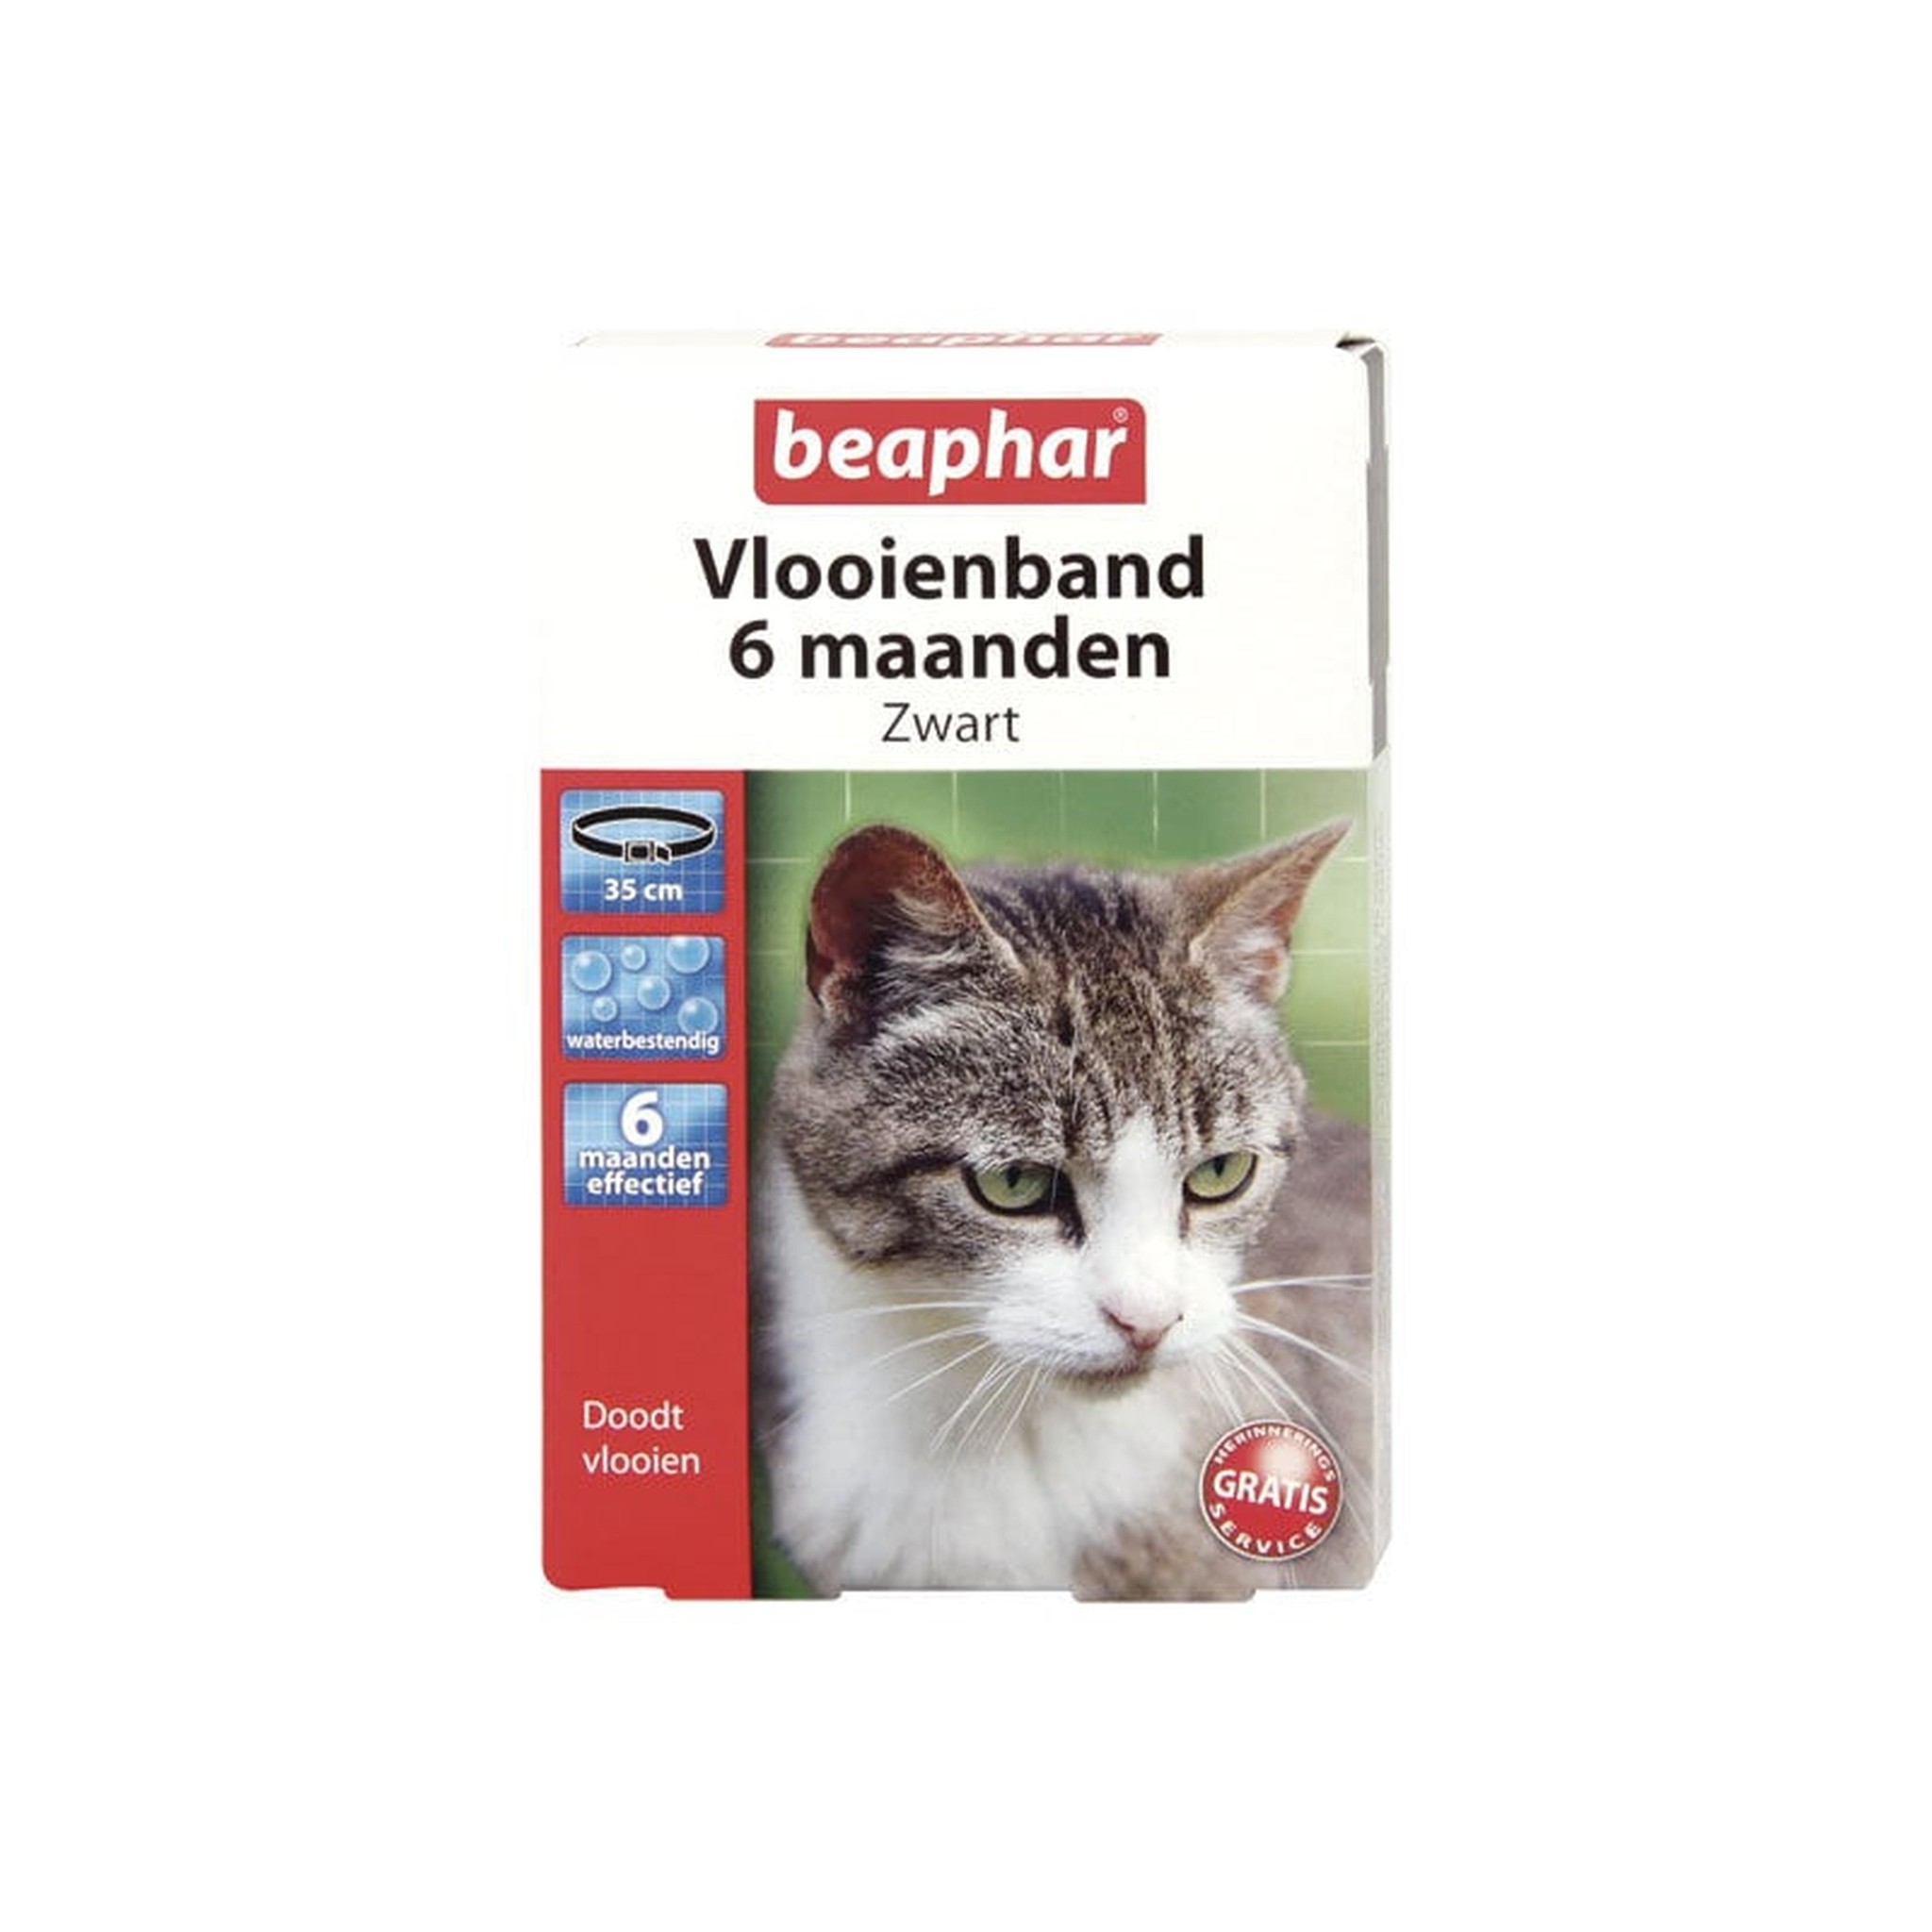 vod transmissie gevoeligheid Beaphar Vlooienband 6 maanden voor kat - Beaphar - Webwinkel voor vijver,  aquarium en huisdieren | Beest.nl